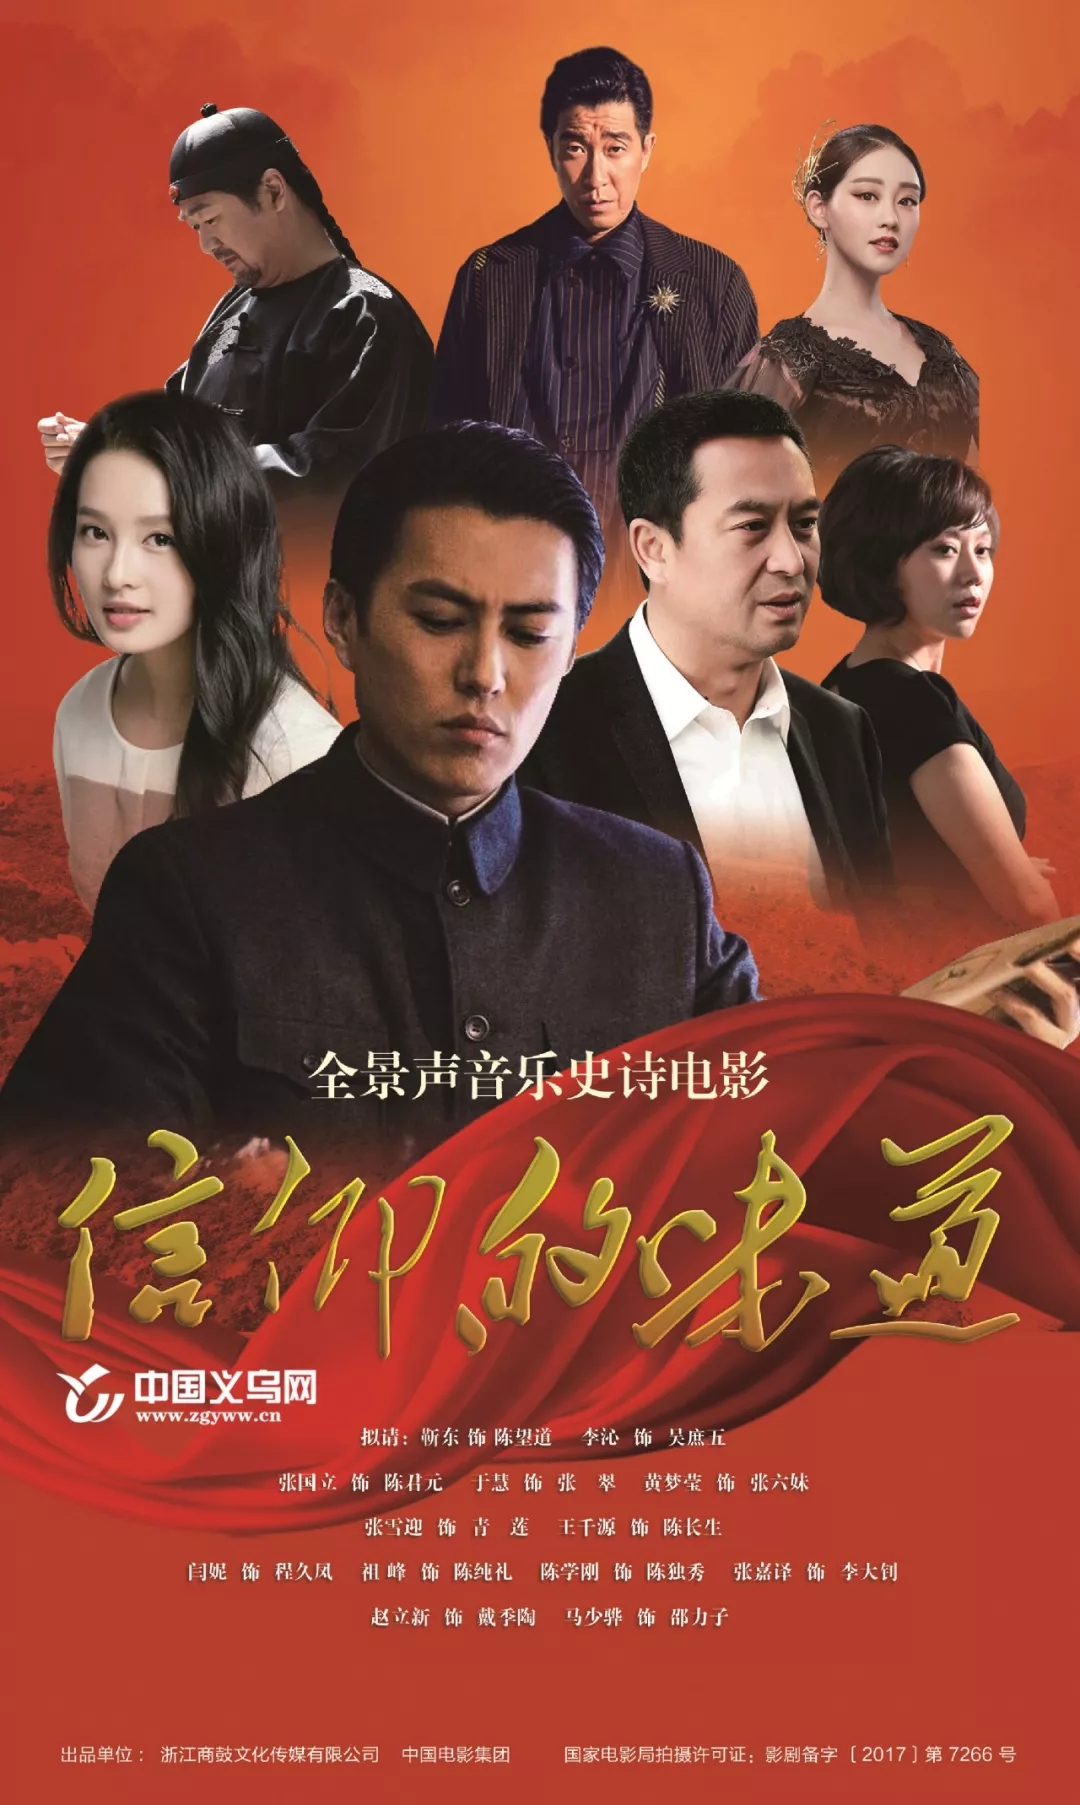 电影《信仰的味道》海报公布:靳东拟演共产党宣言译者